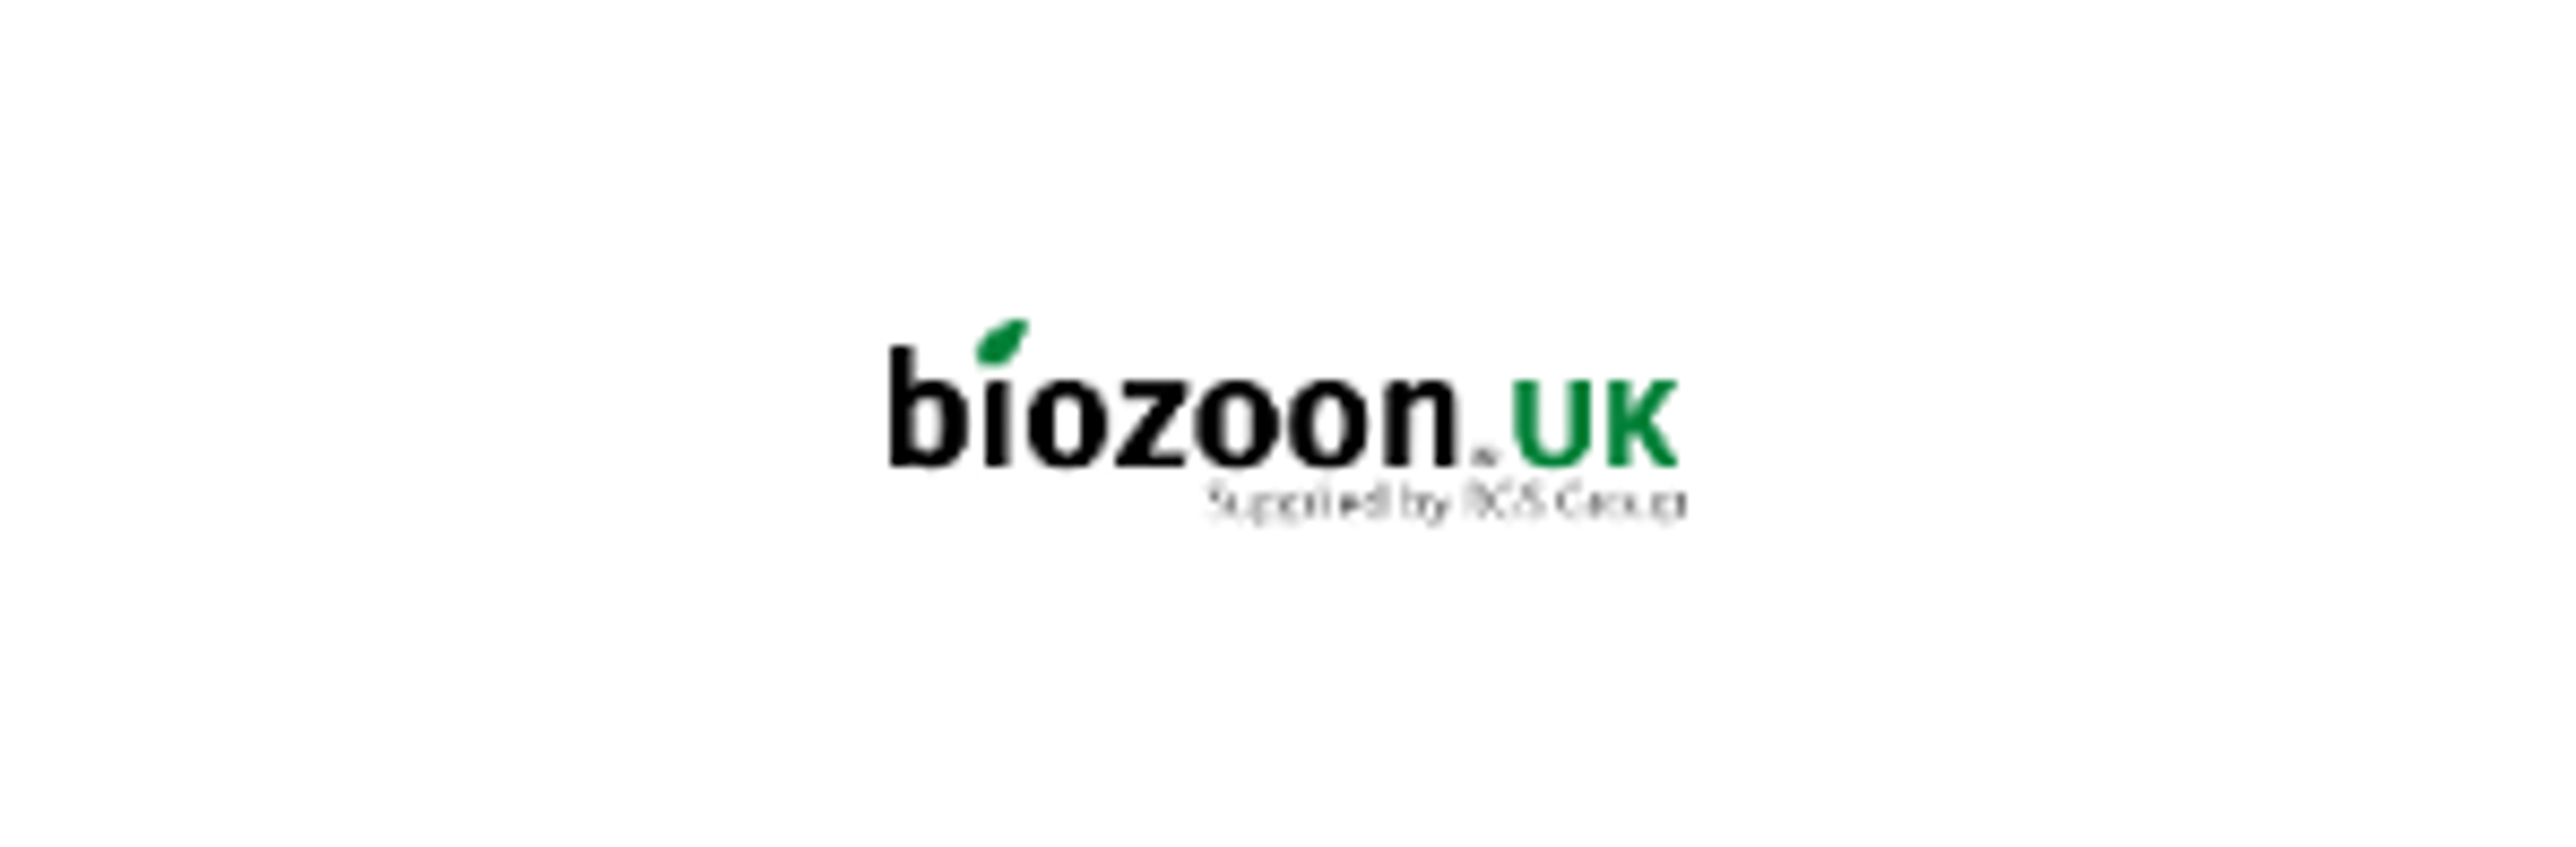 Biozoon UK